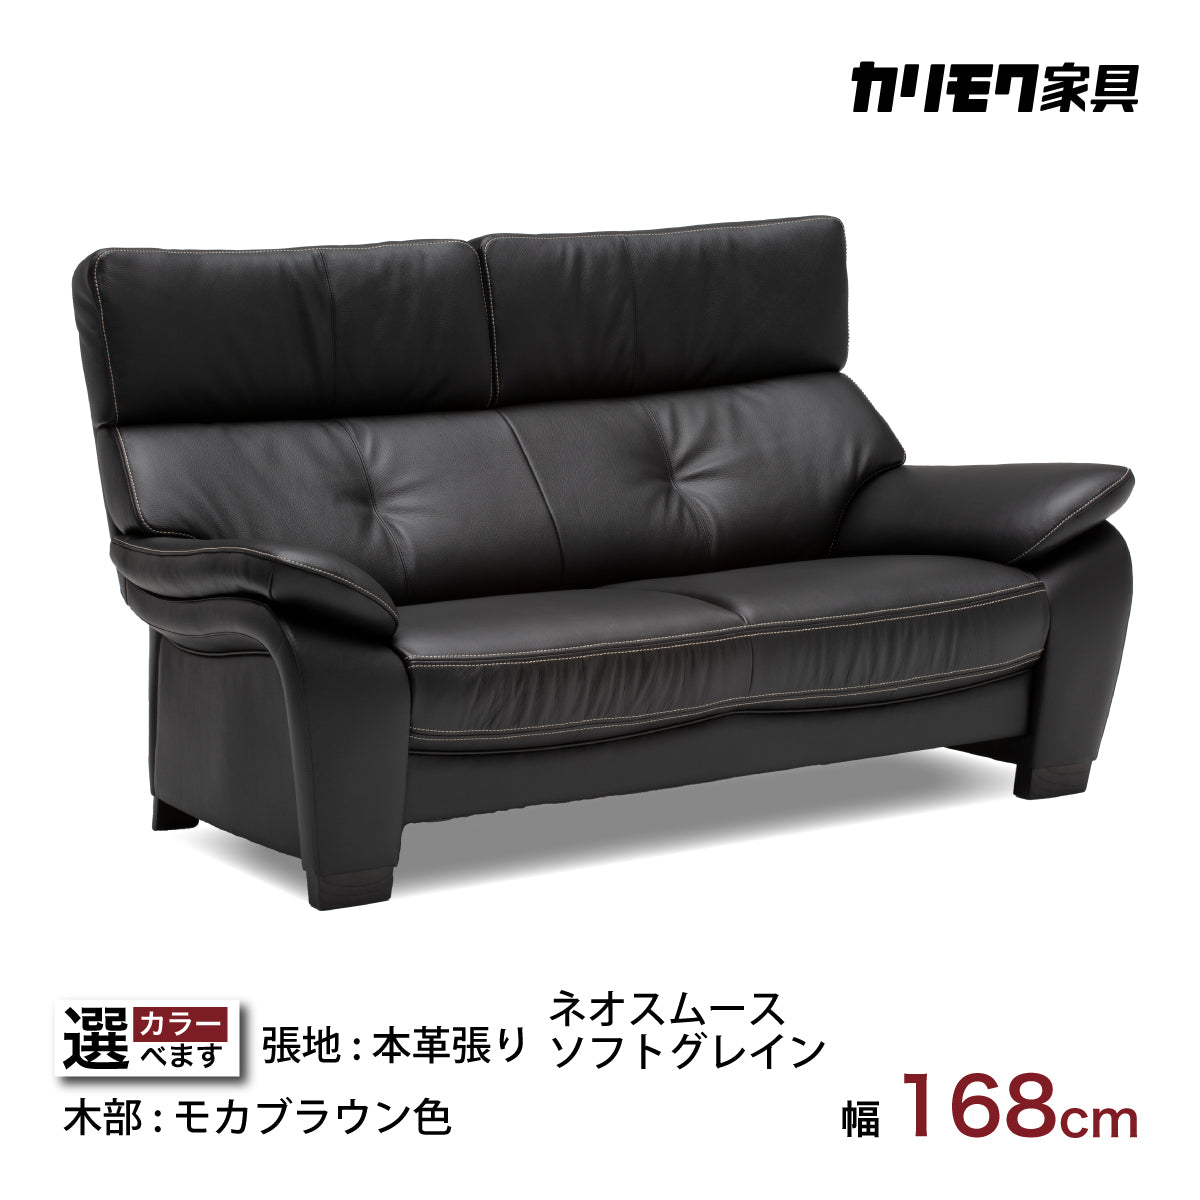 karimoku(カリモク家具)より本革を使用したZT73 2人掛けソファーです 